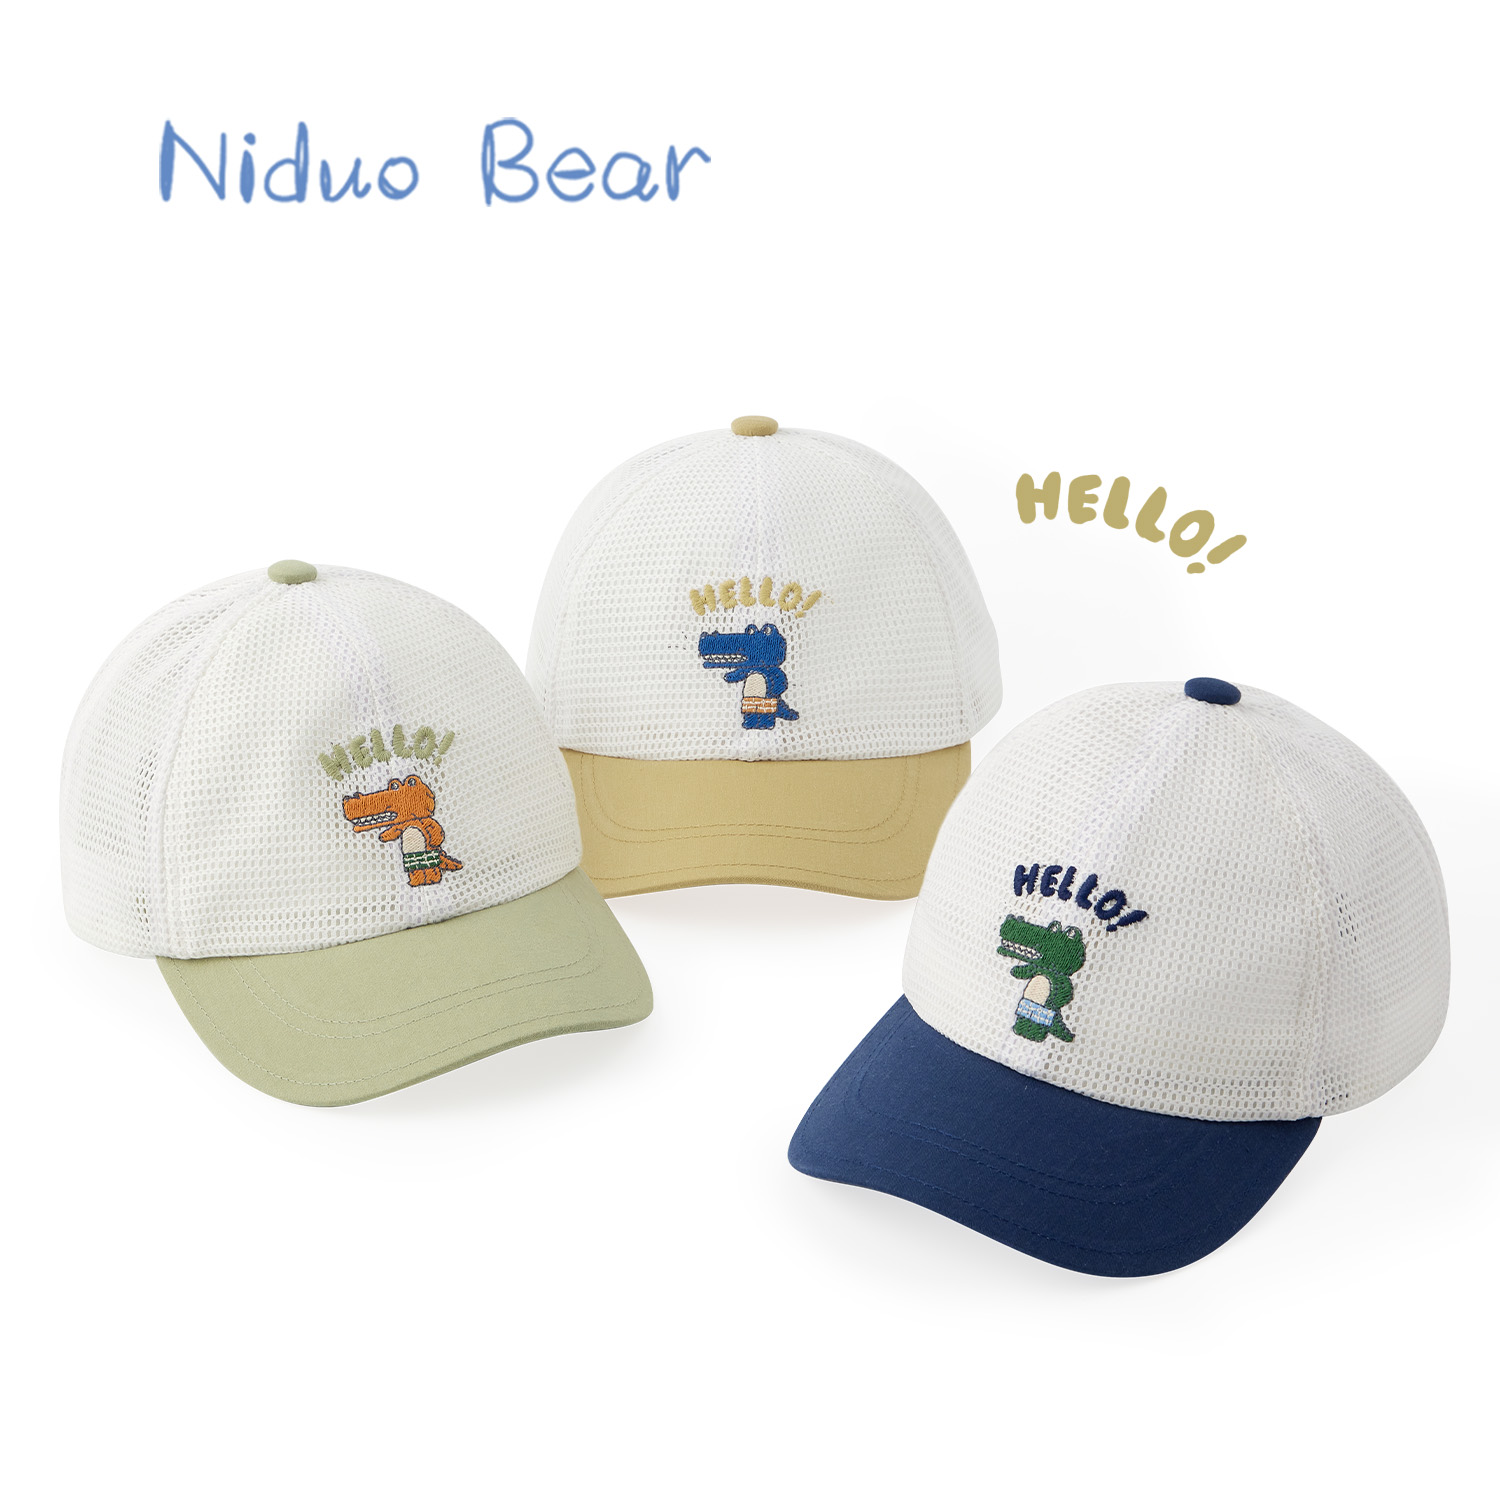 niduo bear 尼多熊 儿童帽子宝宝鸭舌帽棒球帽男童网眼遮阳帽婴儿帽子夏季薄